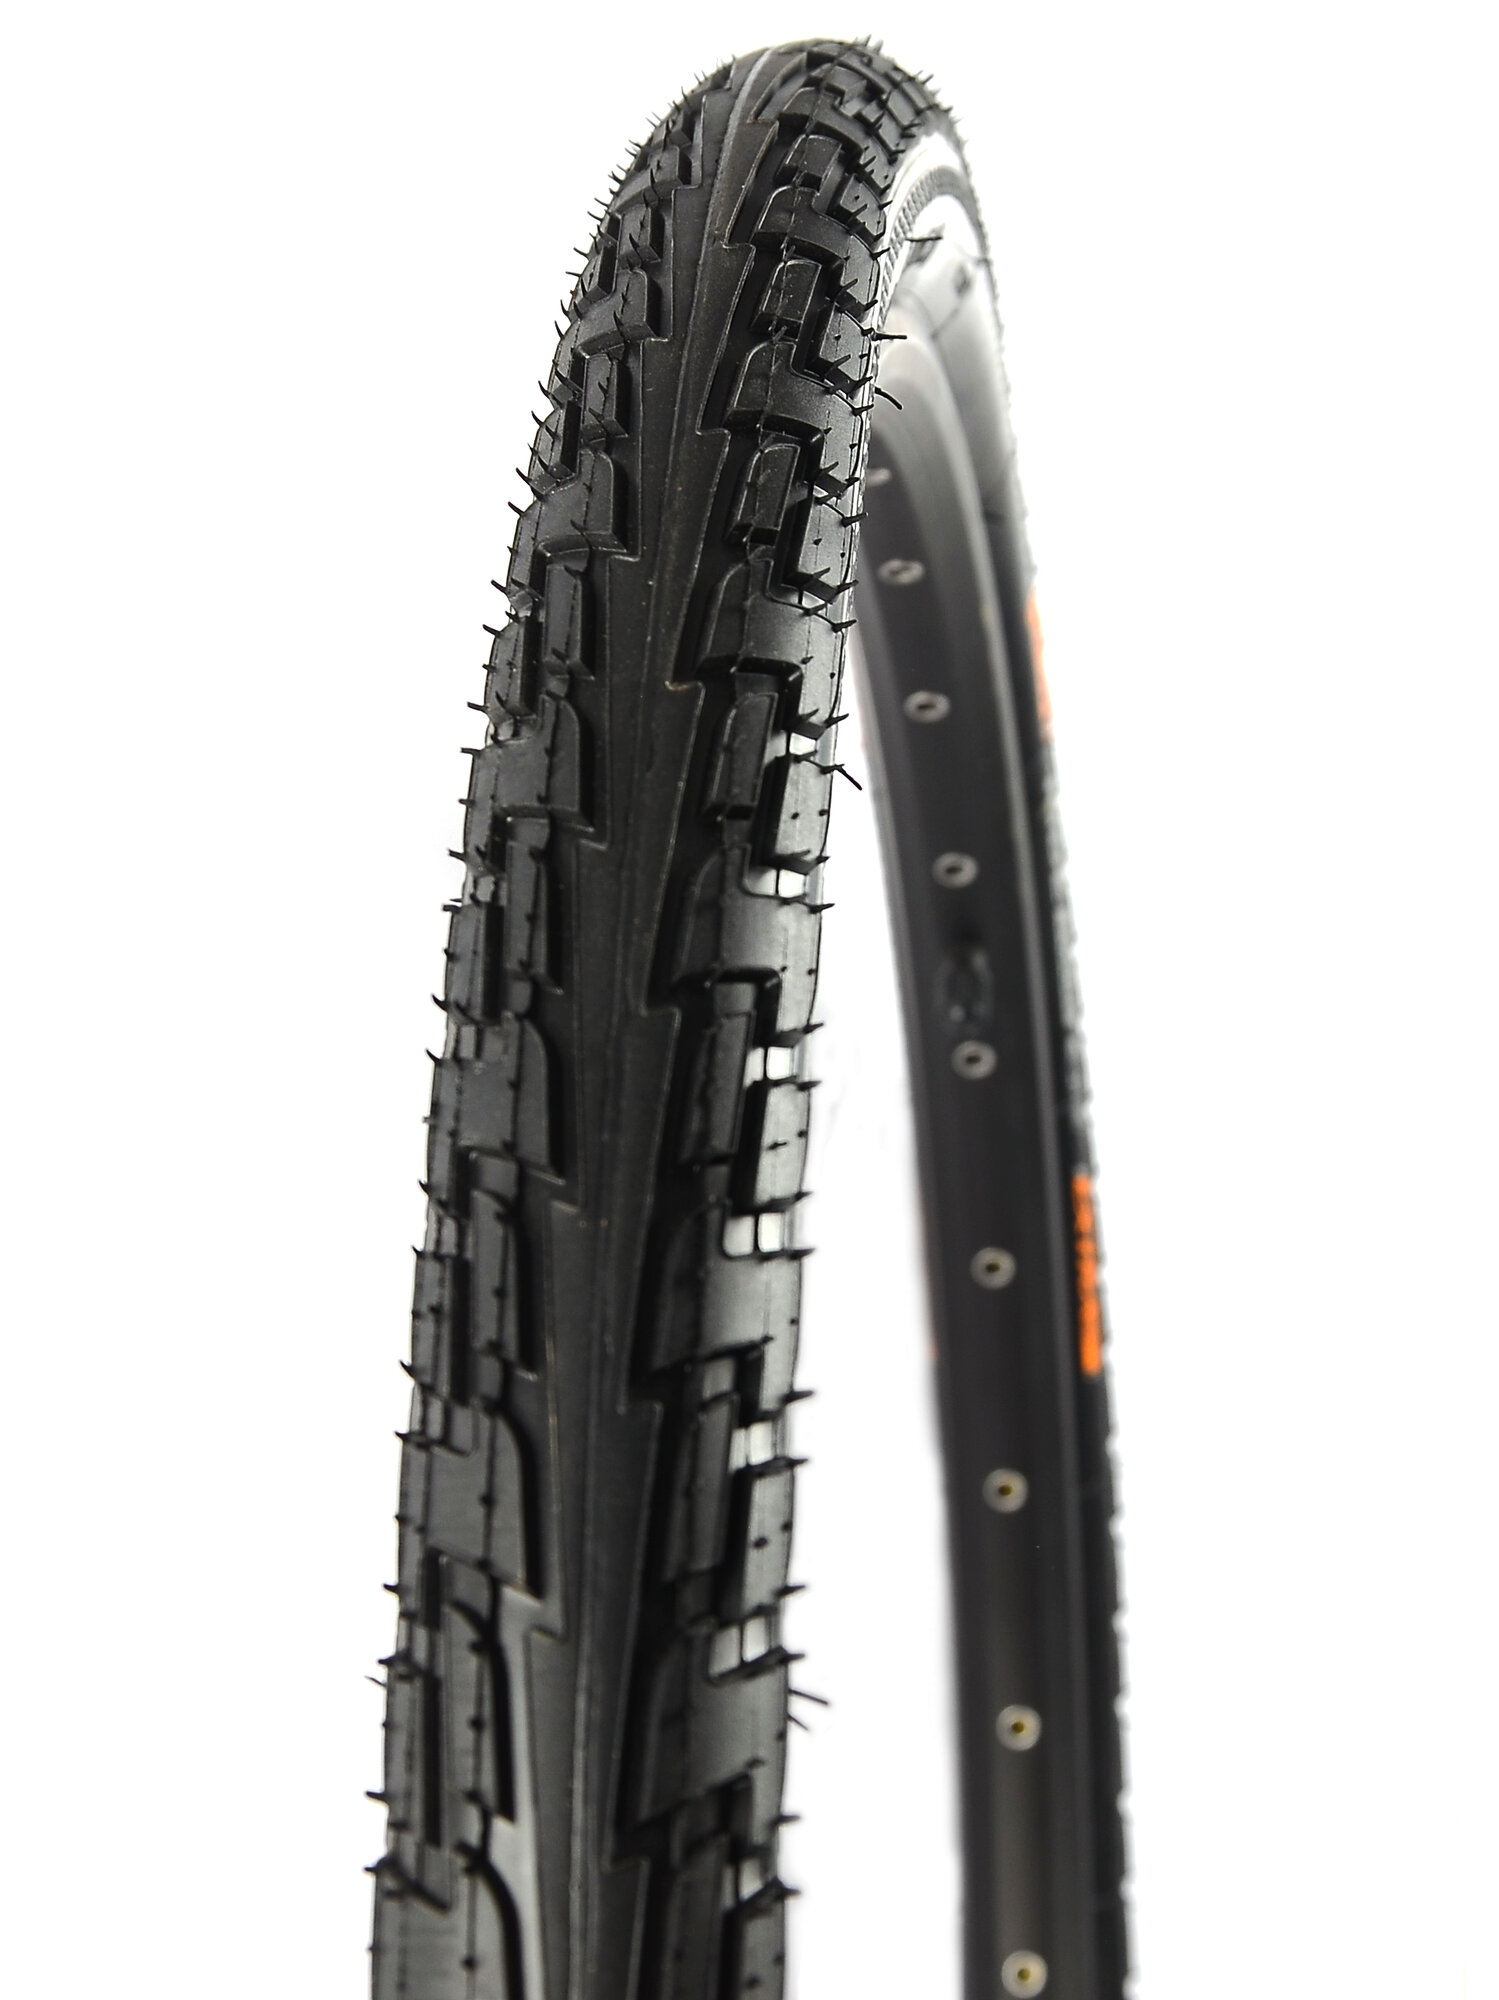 Покрышка для велосипеда Continental Ride Tour 26"x1.75 (47-559), MAX BAR 4, PSI 58, жесткий корд, антипрокольный слой, черная